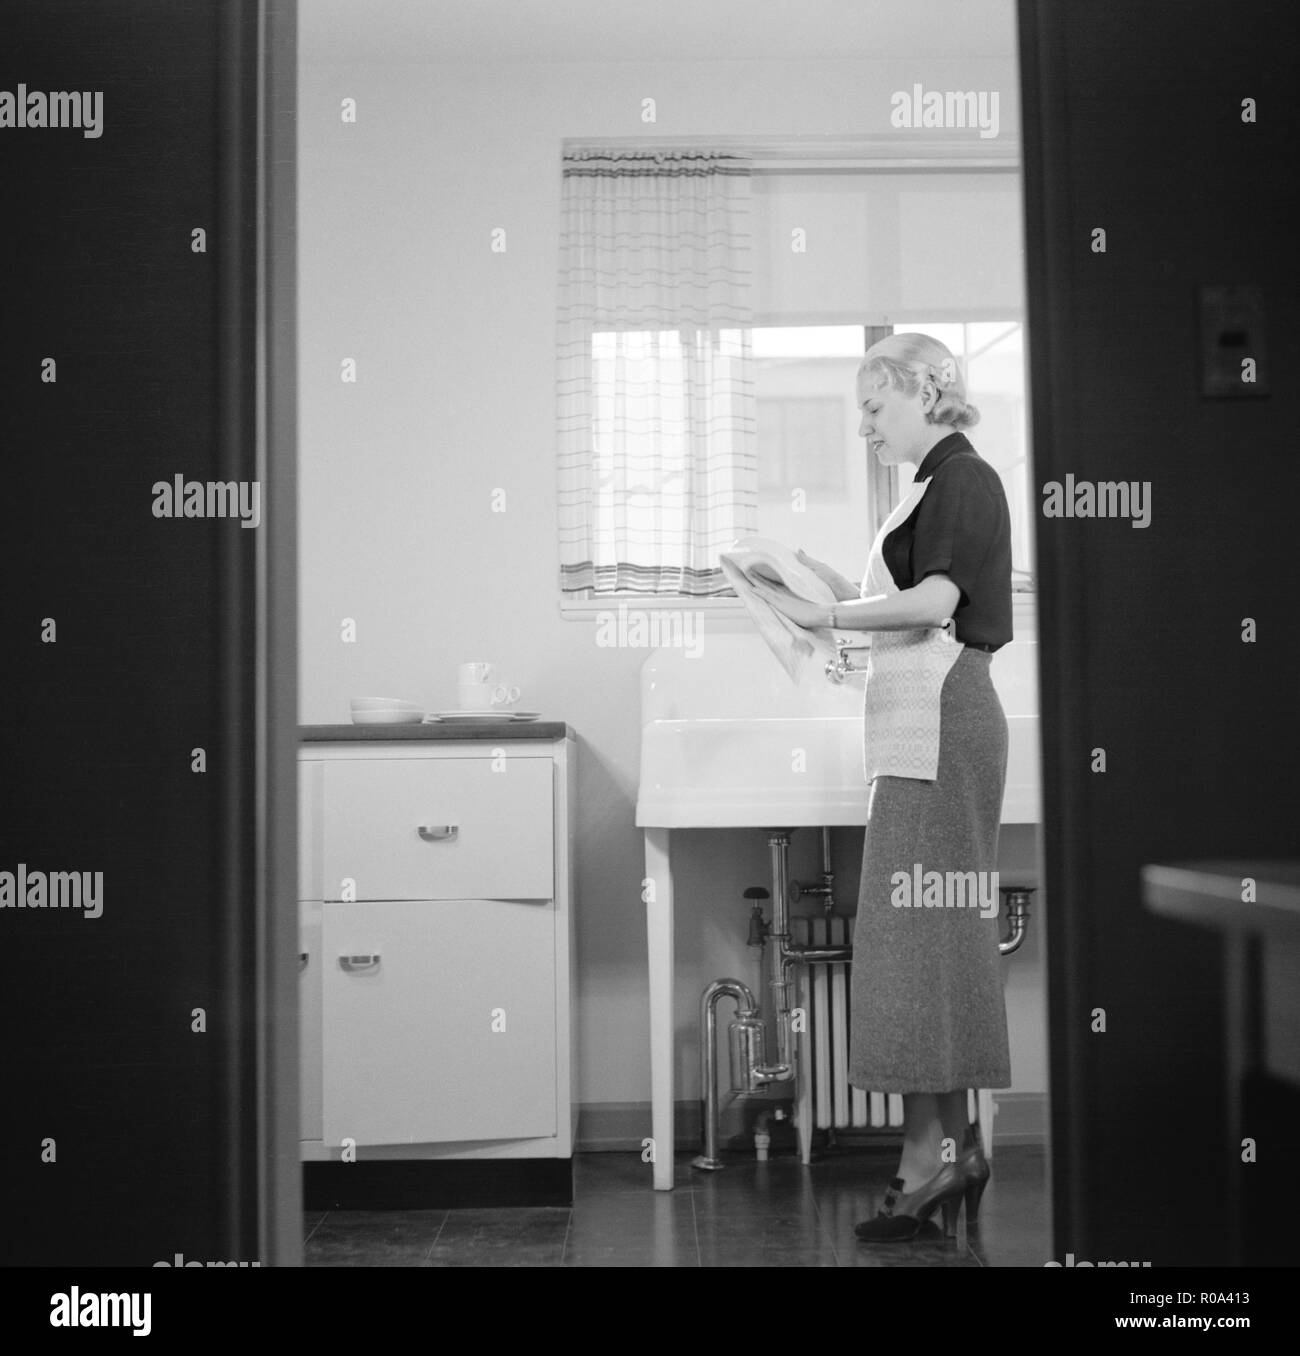 Woman Washing Dishes, Intérieur de maison terminée, nouveau Pacte Communautaire Coopérative, Greenbelt, Maryland, USA, Arthur Rothstein, Farm Security Administration, Novembre 1936 Banque D'Images